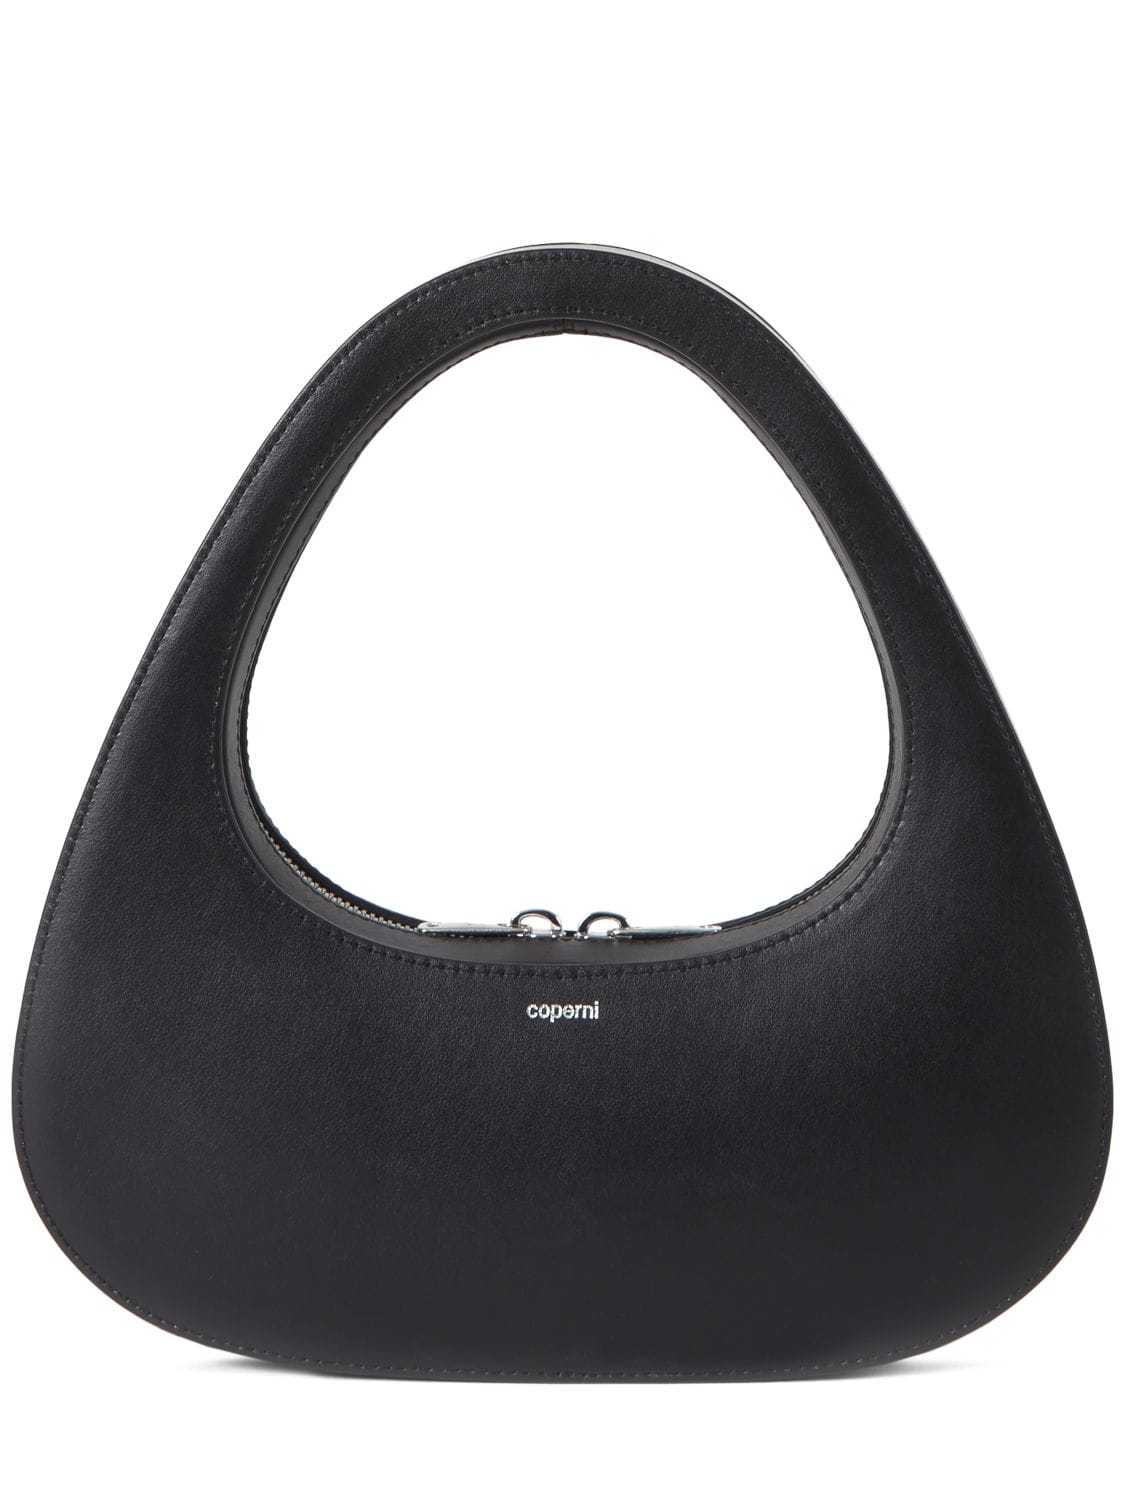 Image of Baguette Swipe Bag